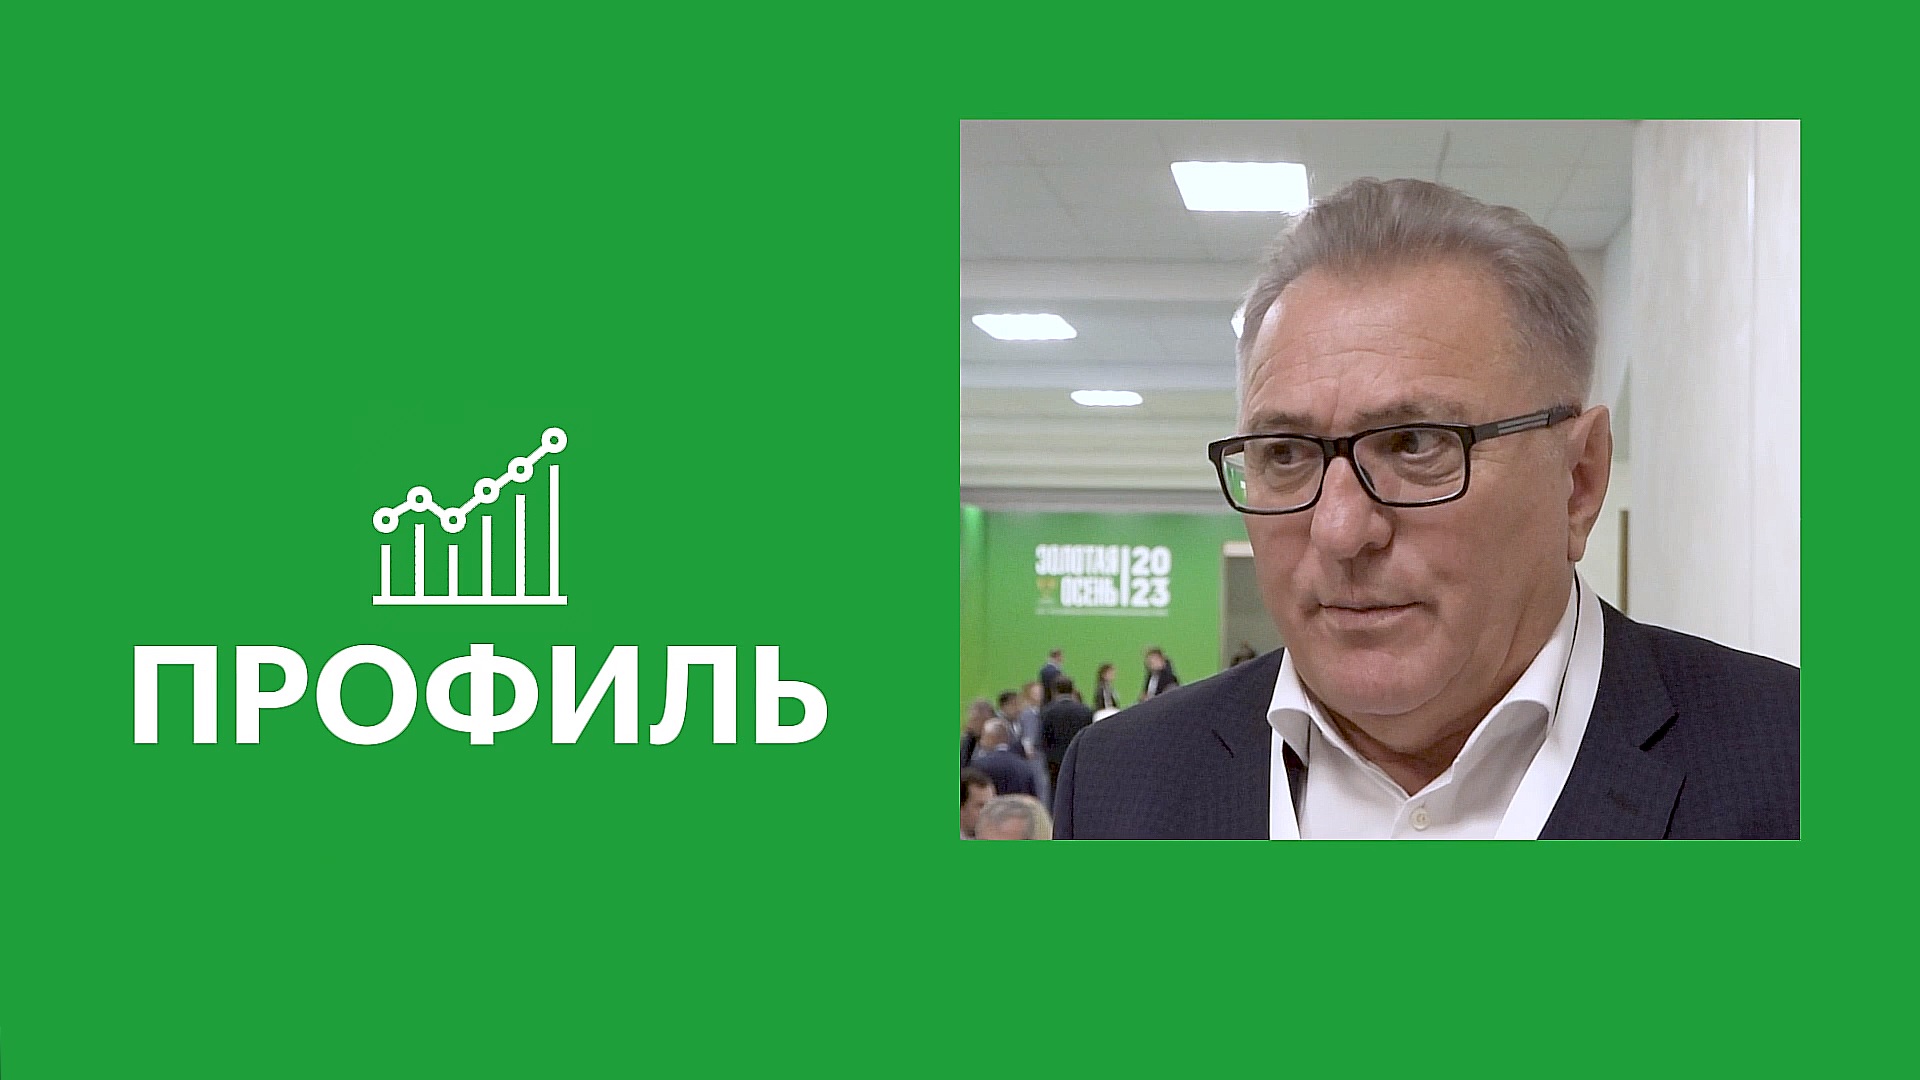 НСА: «За два года страховщики выплатили аграриям около 10 млрд рублей»